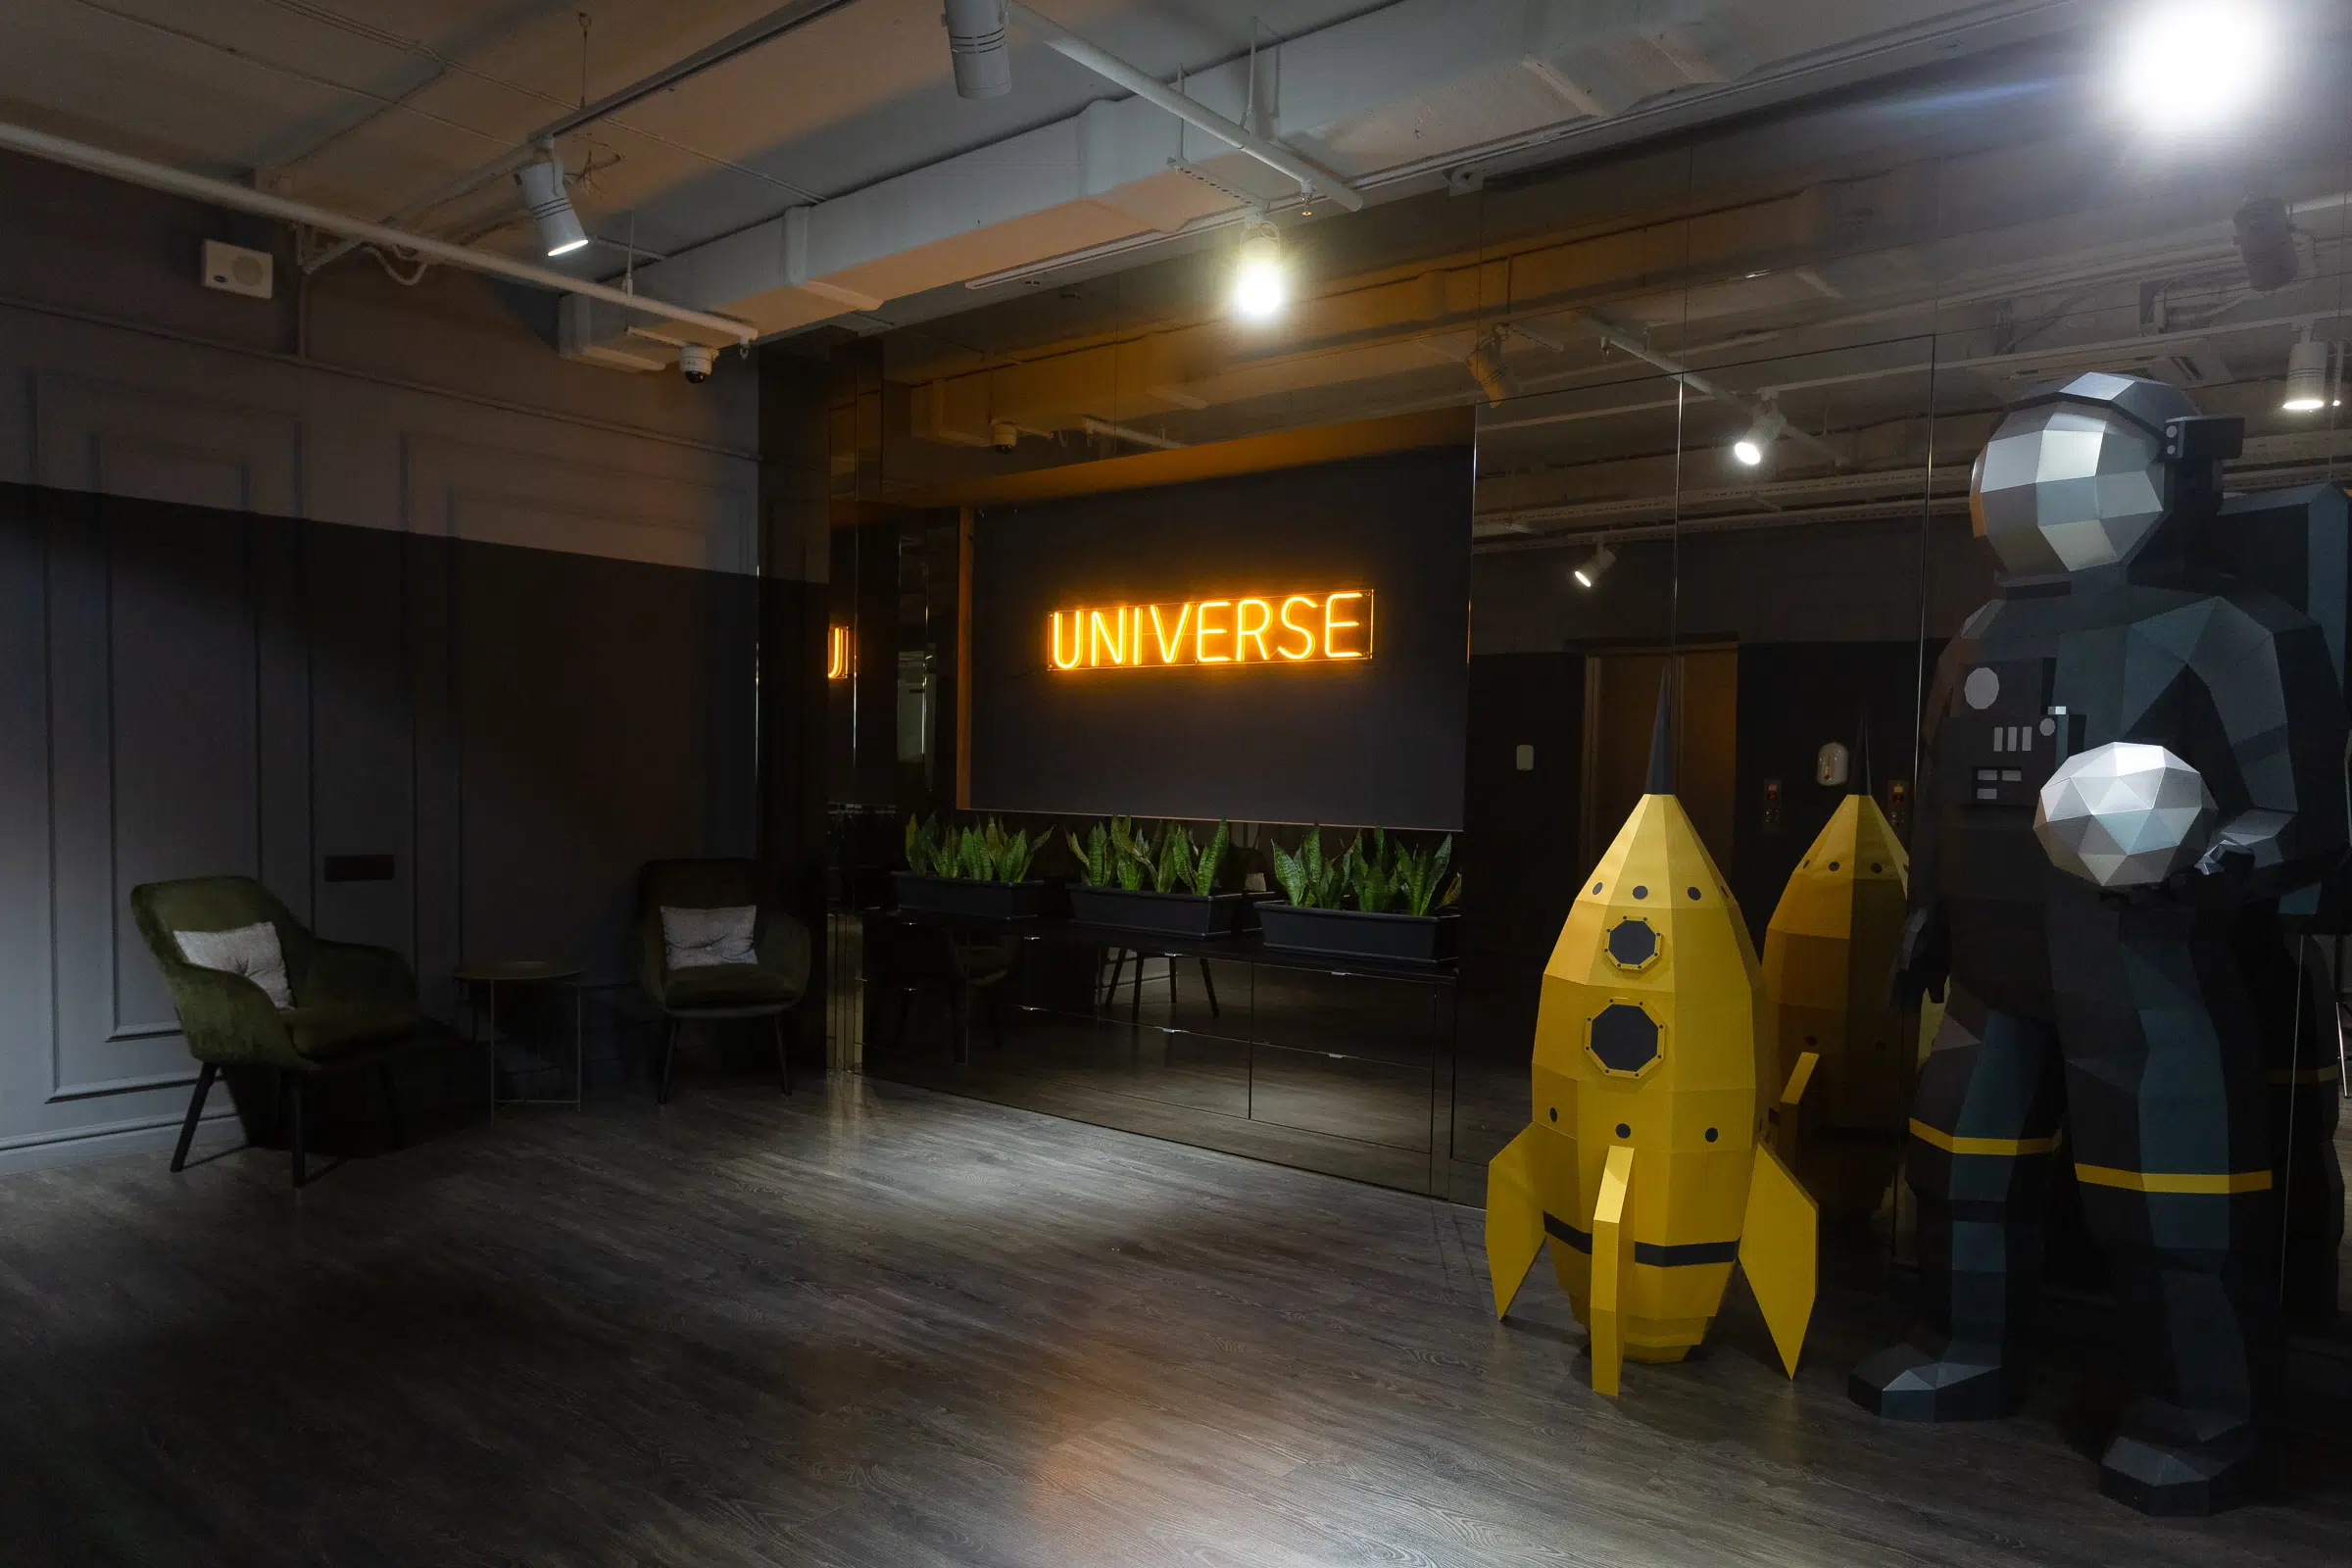 Офис Universe